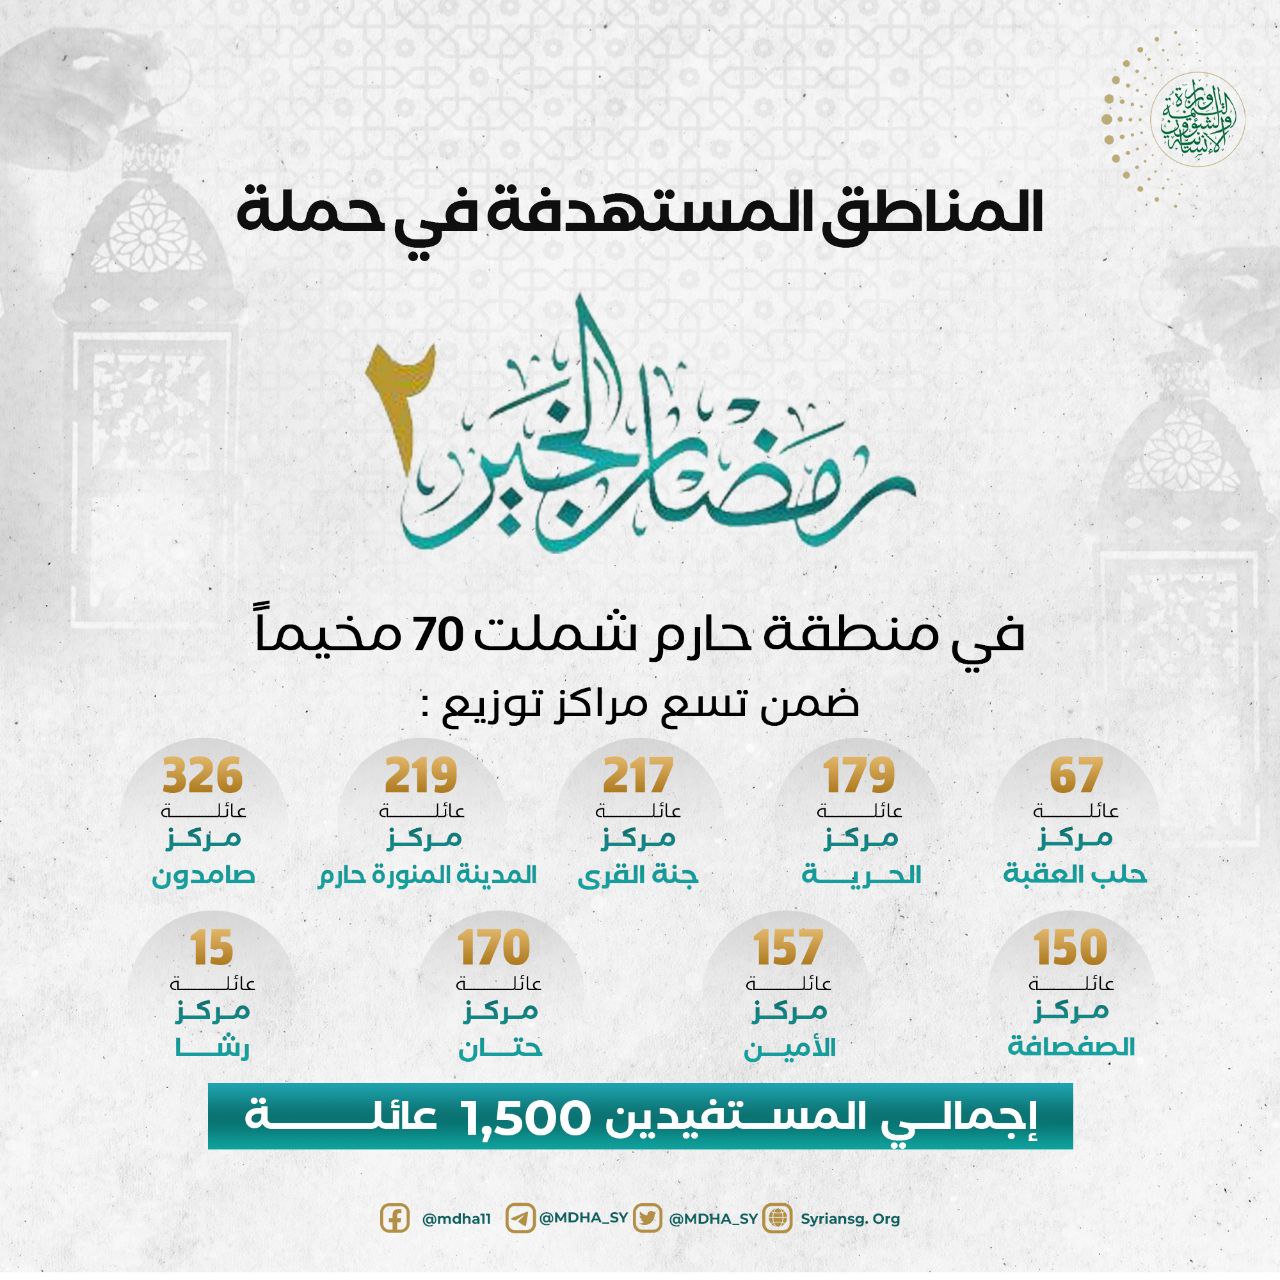 المناطق المستهدفة في حملة رمضان الخير 2 في منطقة حارم.